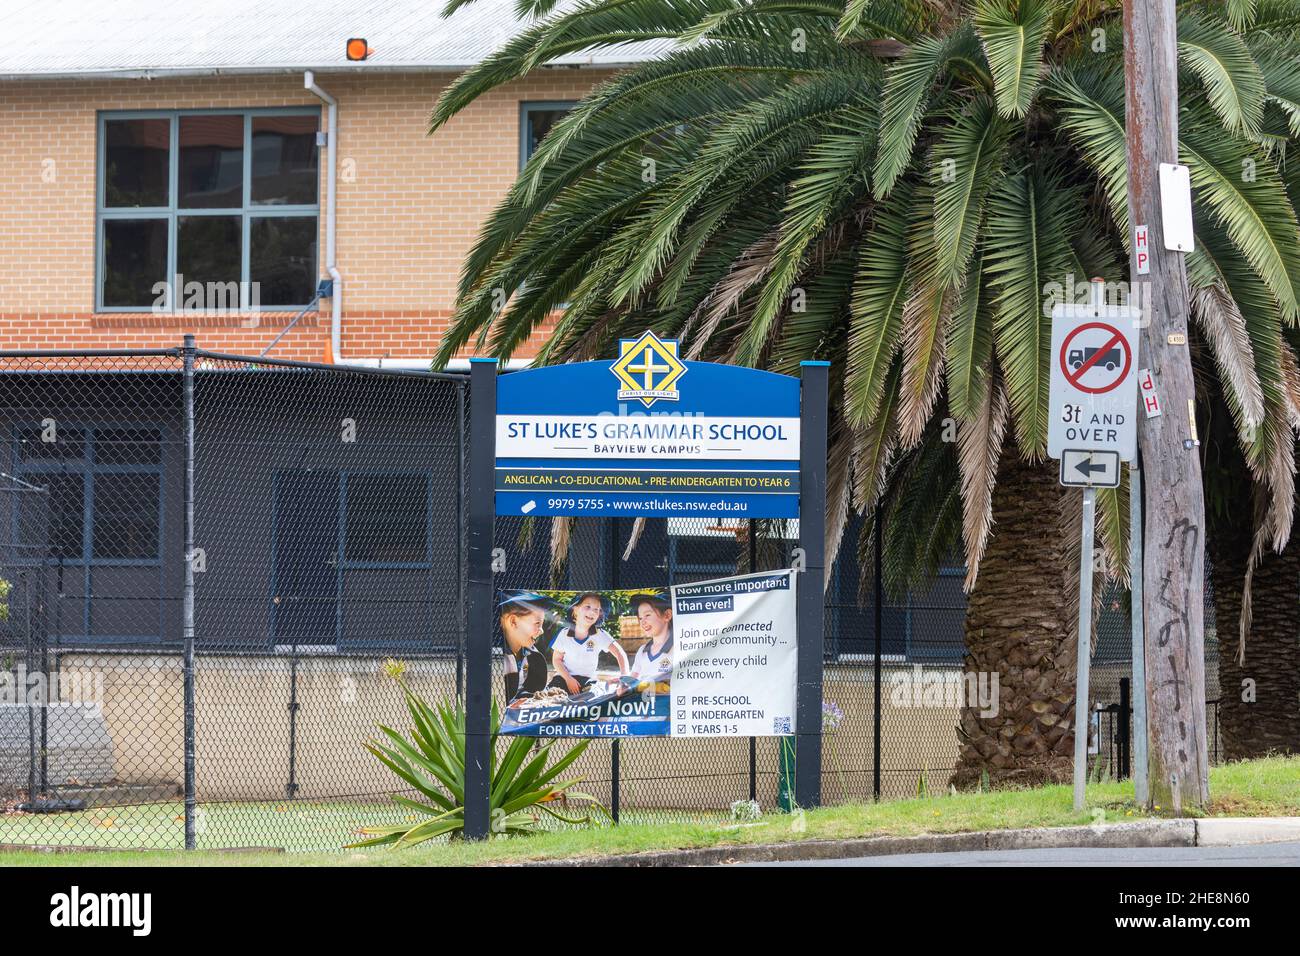 École de grammaire anglicane australienne, école de grammaire St Lukes à Bayview pour les élèves de la maternelle à l'an 6, Sydney, Australie Banque D'Images